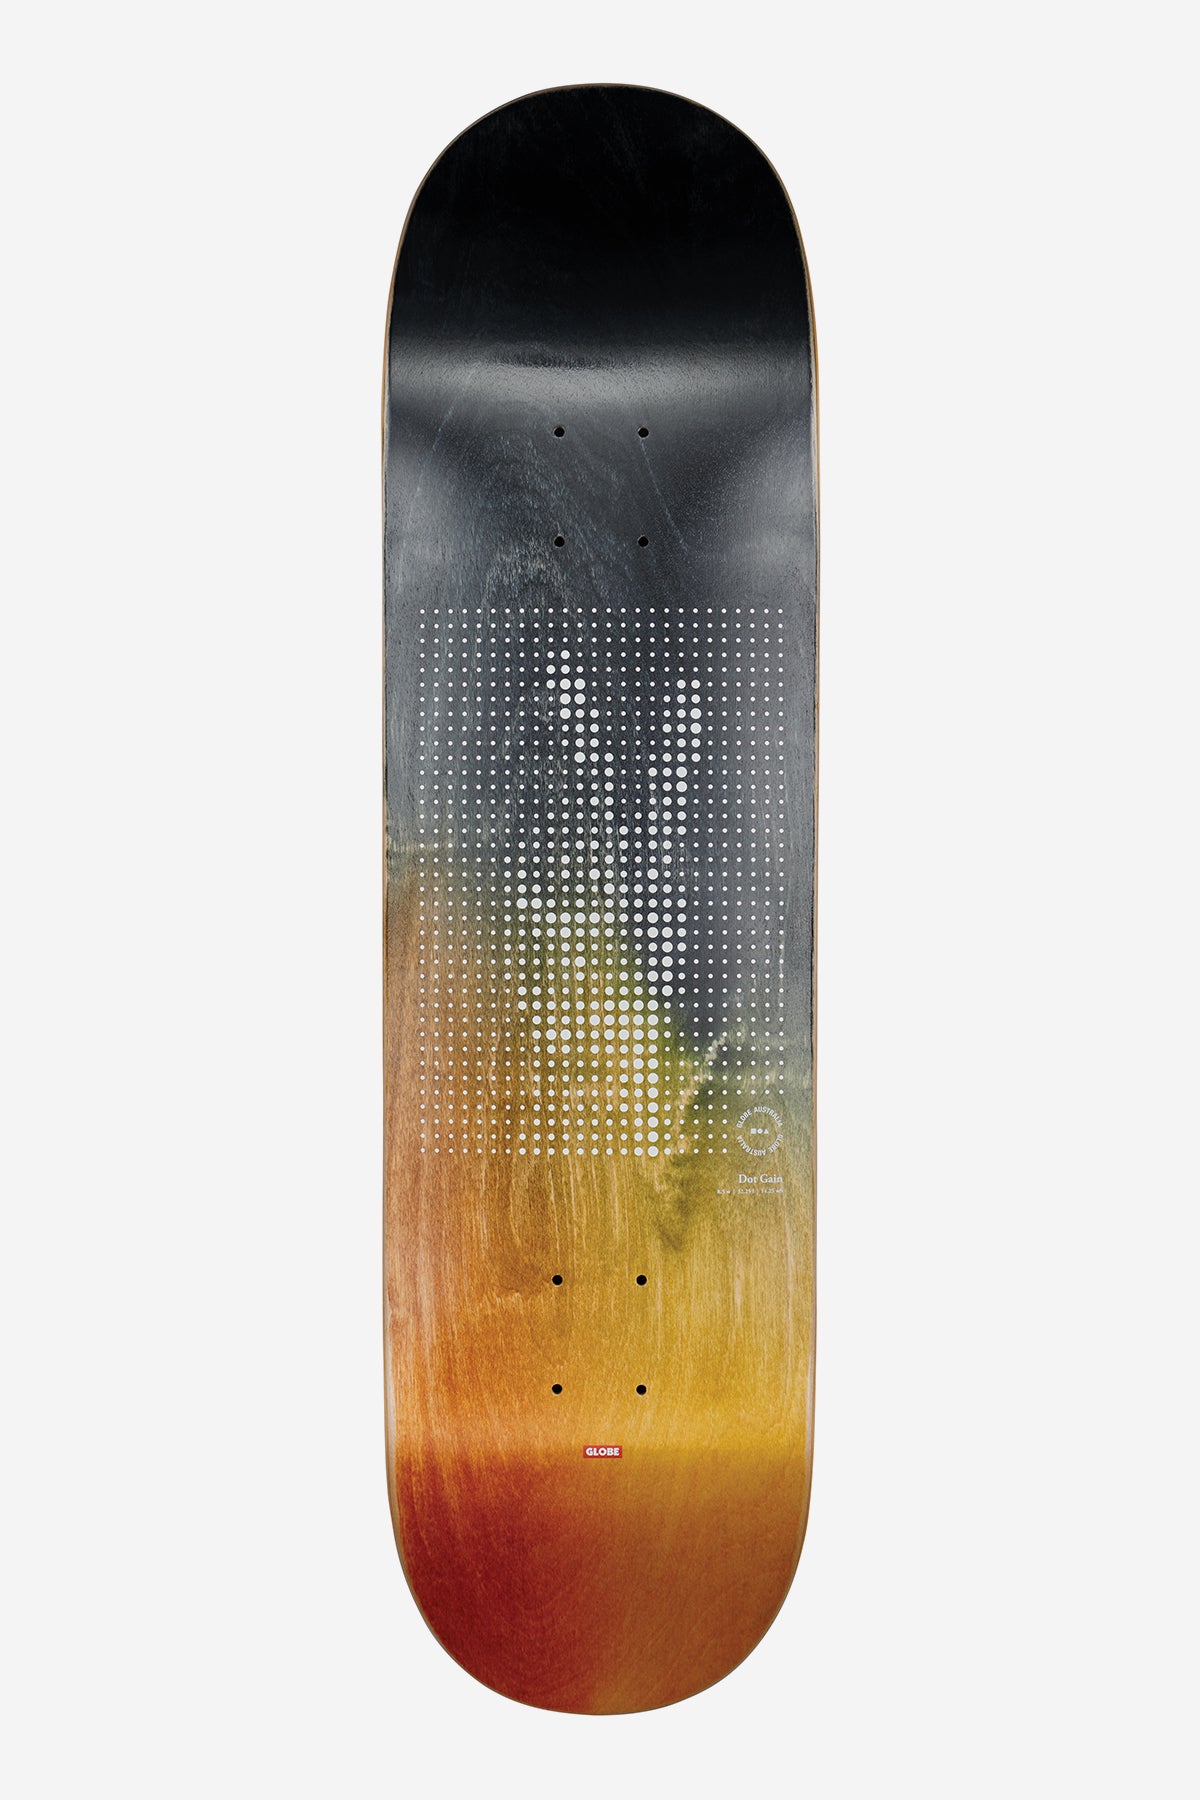 g2 dot gain peace 8.5" skateboard deck